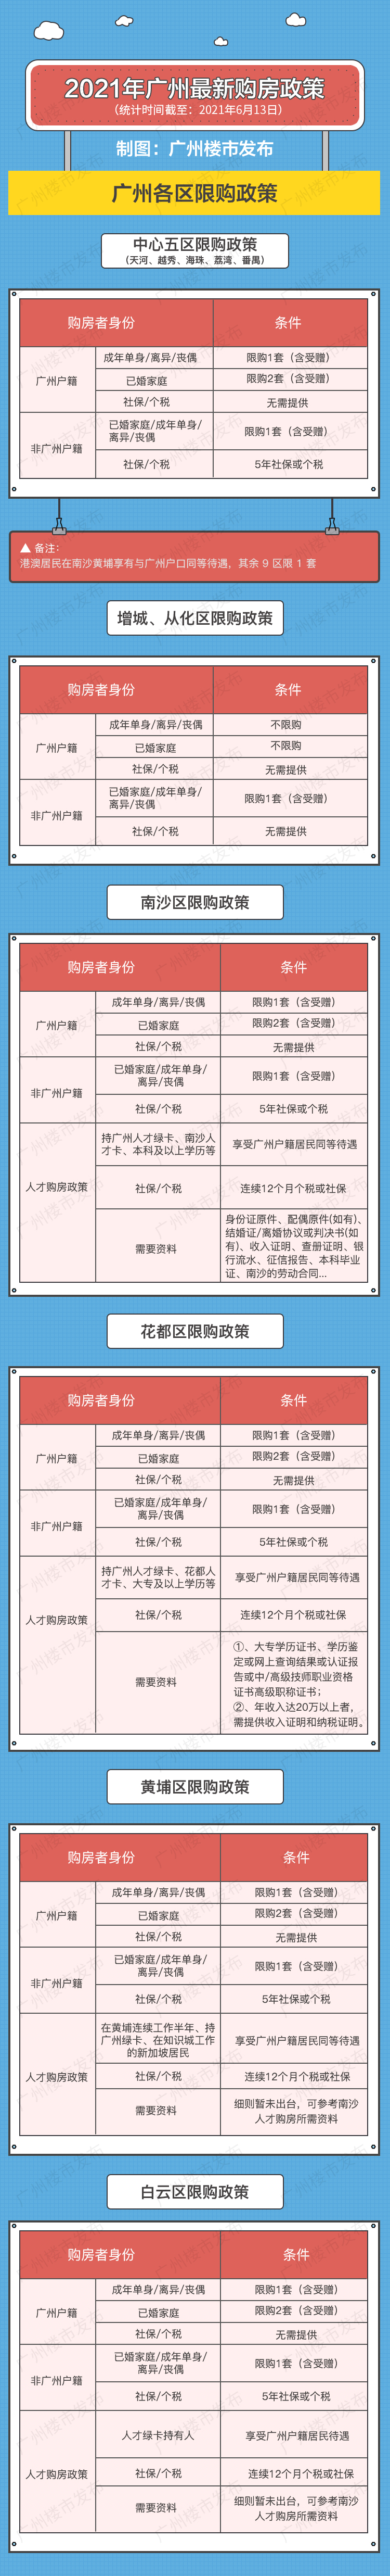 广州二手房交易税费,广州二手房交易税费一览表